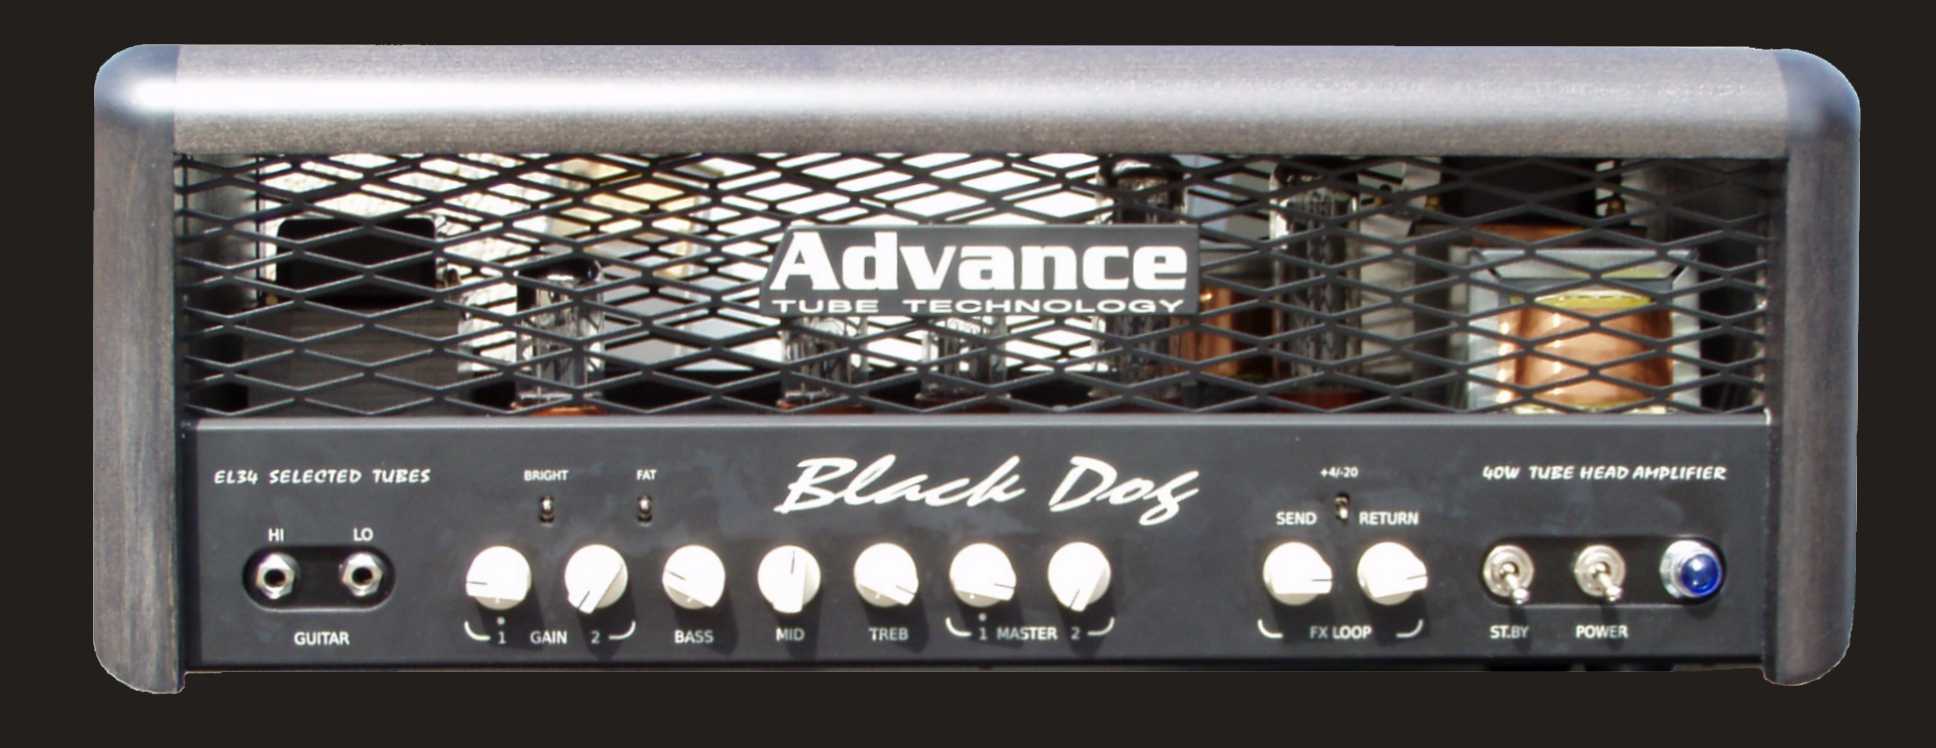 black dog front